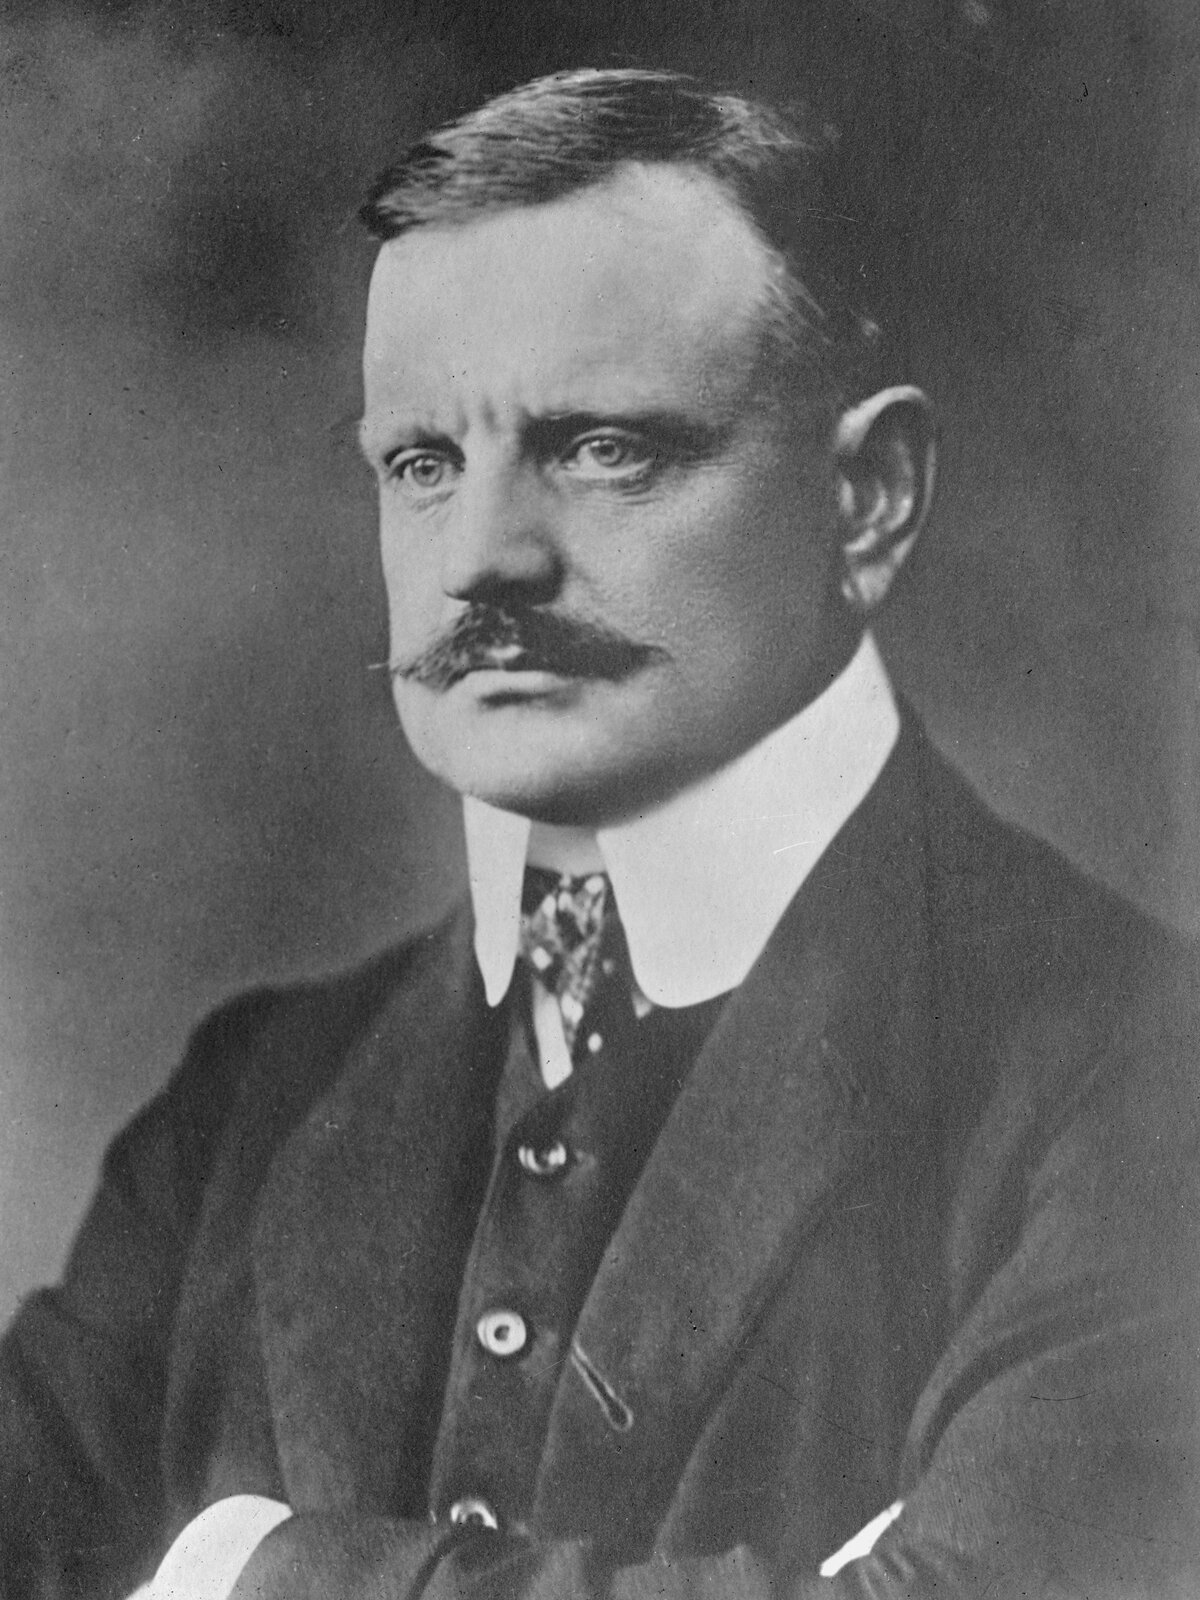 Ilustracja przedstawia fotoportret Jeana Sibeliusa autorstwa Daniela Nyblina. Zdjęcie pochodzi z 1913 roku. Mężczyzna siedzi ze skrzyżowanymi rękoma na wysokości klatki piersiowej. Minę ma poważną, lekko zmarszczone okolice między brwiami. 